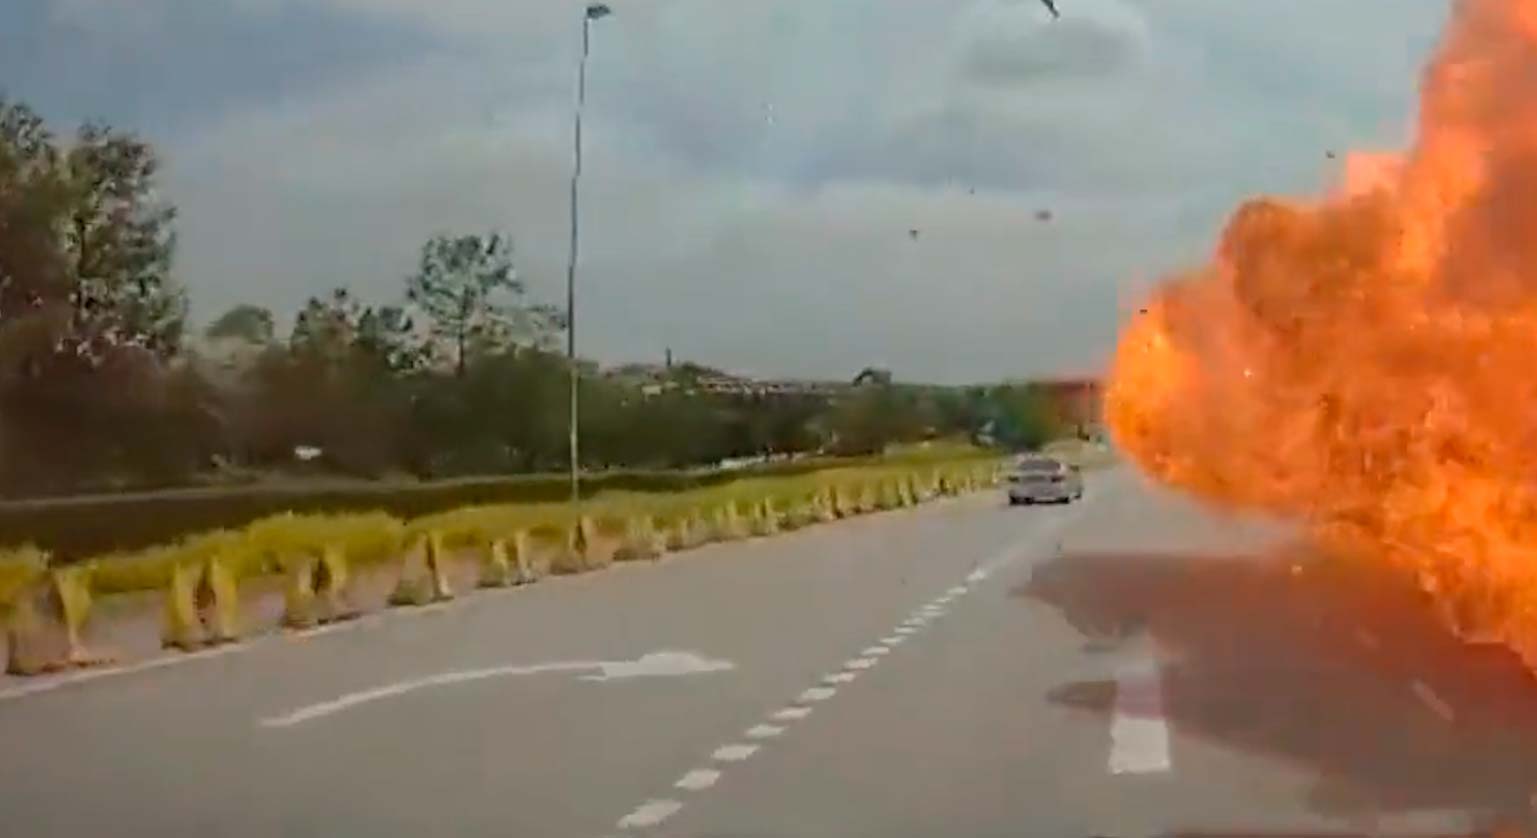 Video: Flygplan kraschar mot bil och motorcykel på motorväg, exploderar och dödar 10 personer. Foto: Twitter @SoyaCincauBM och @hoje_no